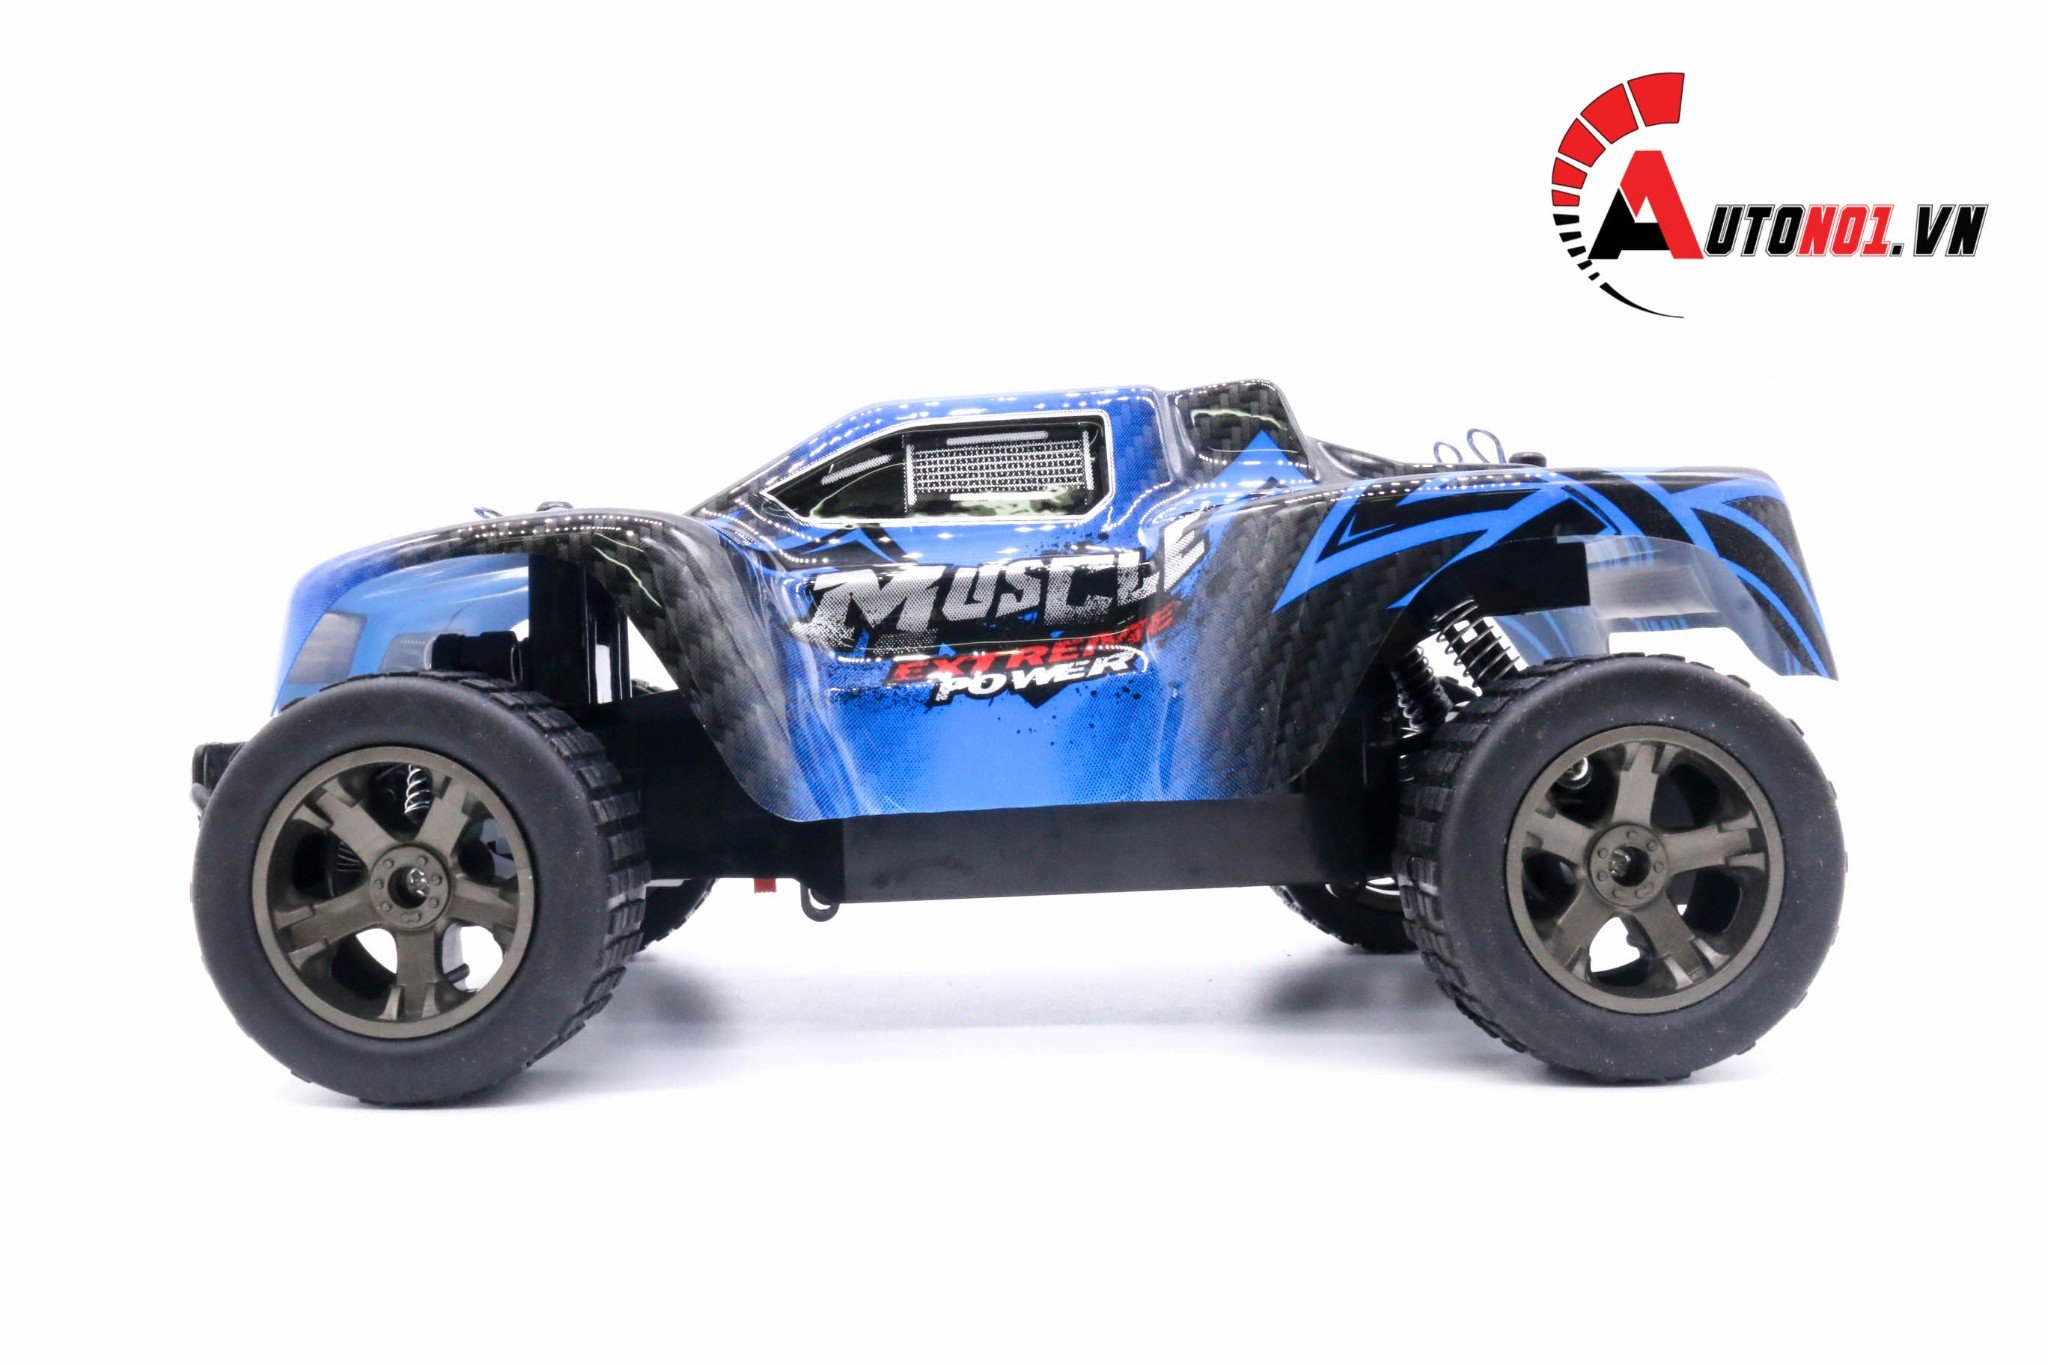  Mô hình xe điều khiển địa hình Muscle Extreme power blue tỉ lệ 1:18 Deer man DK012 